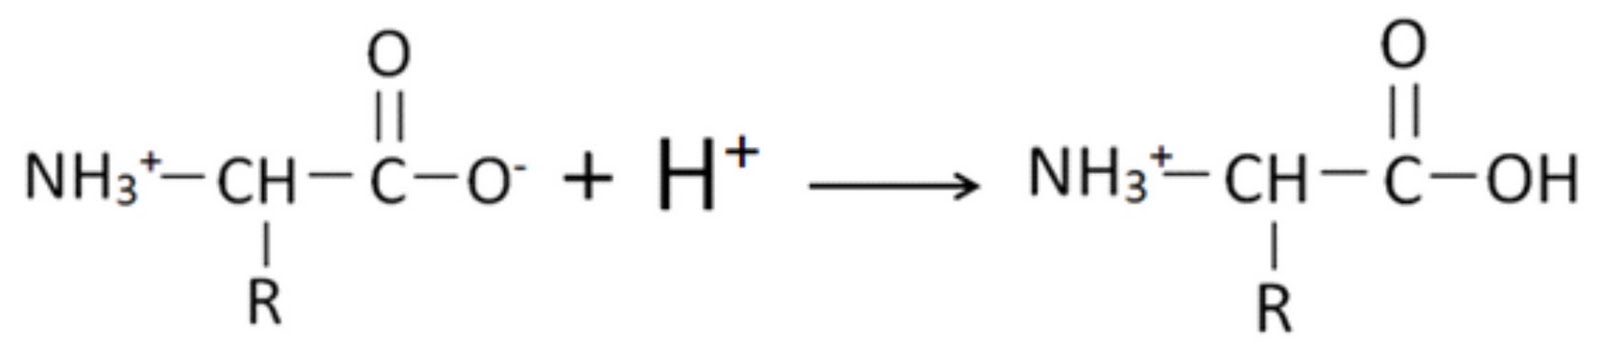 Акриловая кислота nh3. Этиламин этанол. Акриловая кислота с бромоводородом. Полимеризация акриловой кислоты. Этиламин хлорид натрия